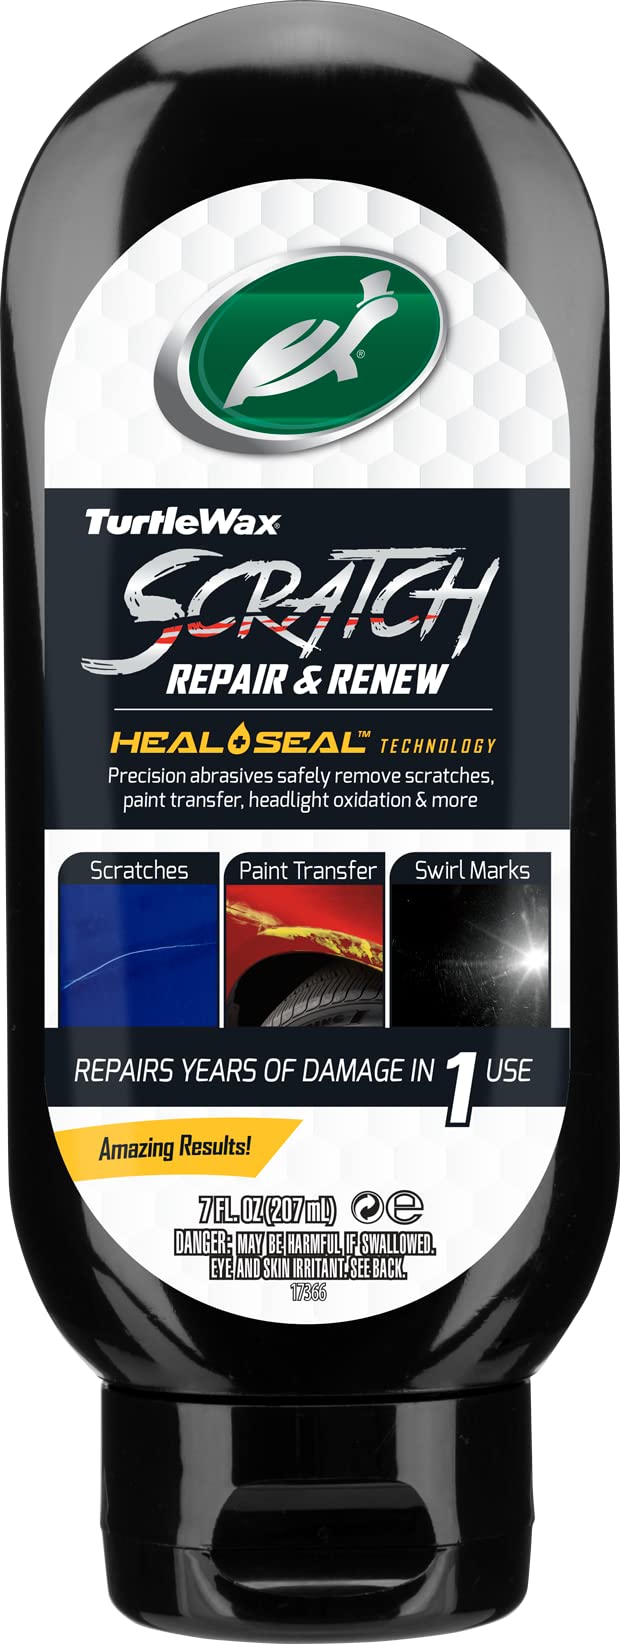 Trutle Wax1830926 Scratch Repair & Renew 200ml von Turtle Wax